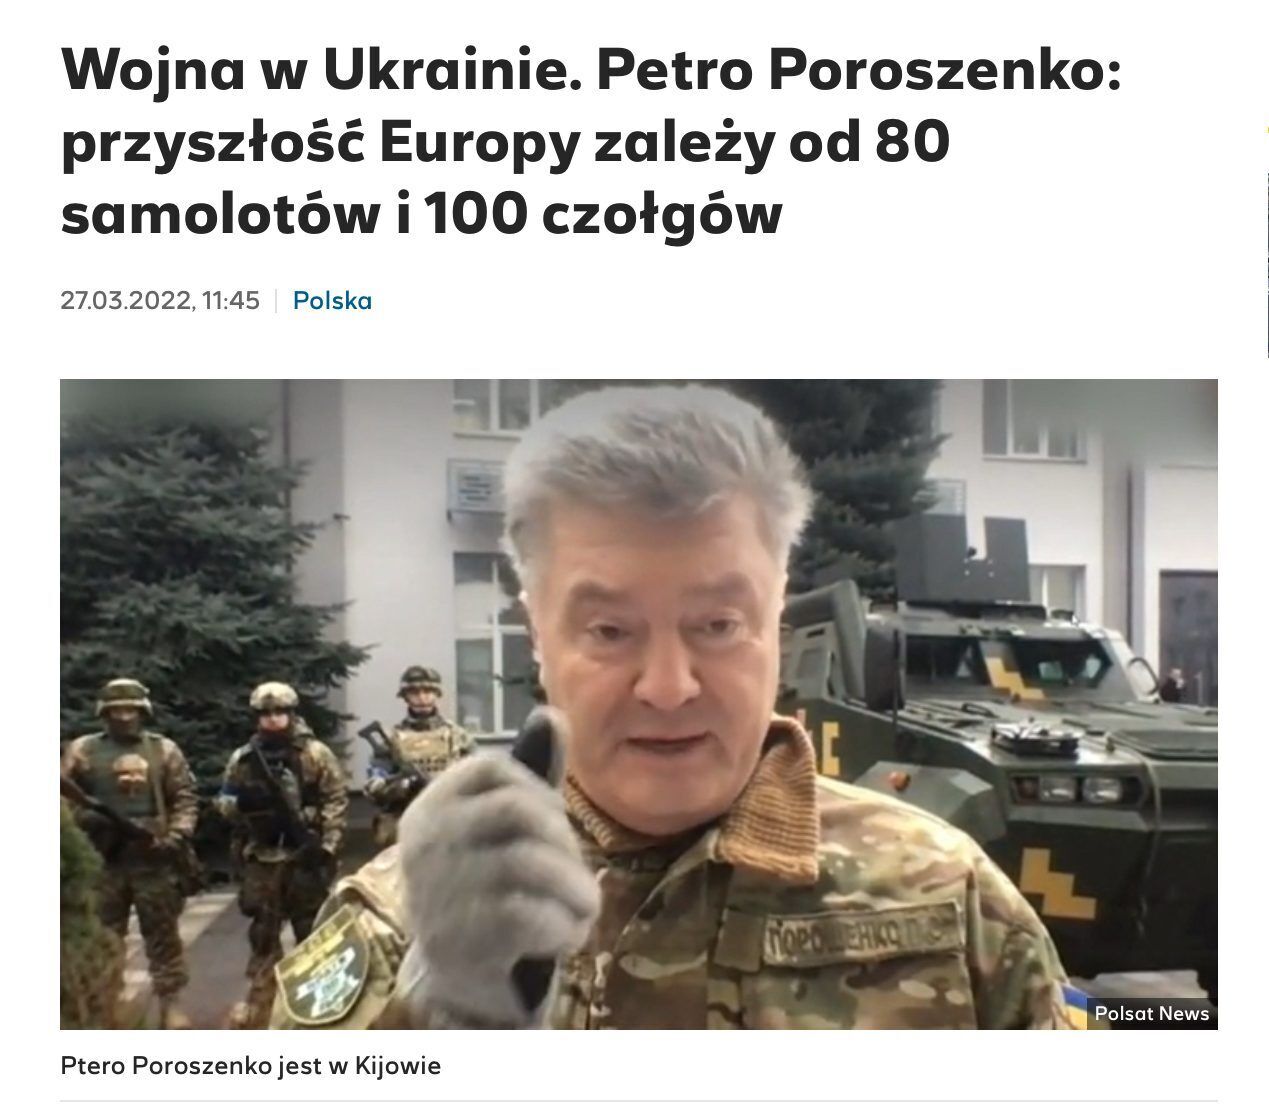 Будущее Европы сейчас зависит от 80 самолетов и 100 танков для украинской армии, – Порошенко в эфире Polsat News